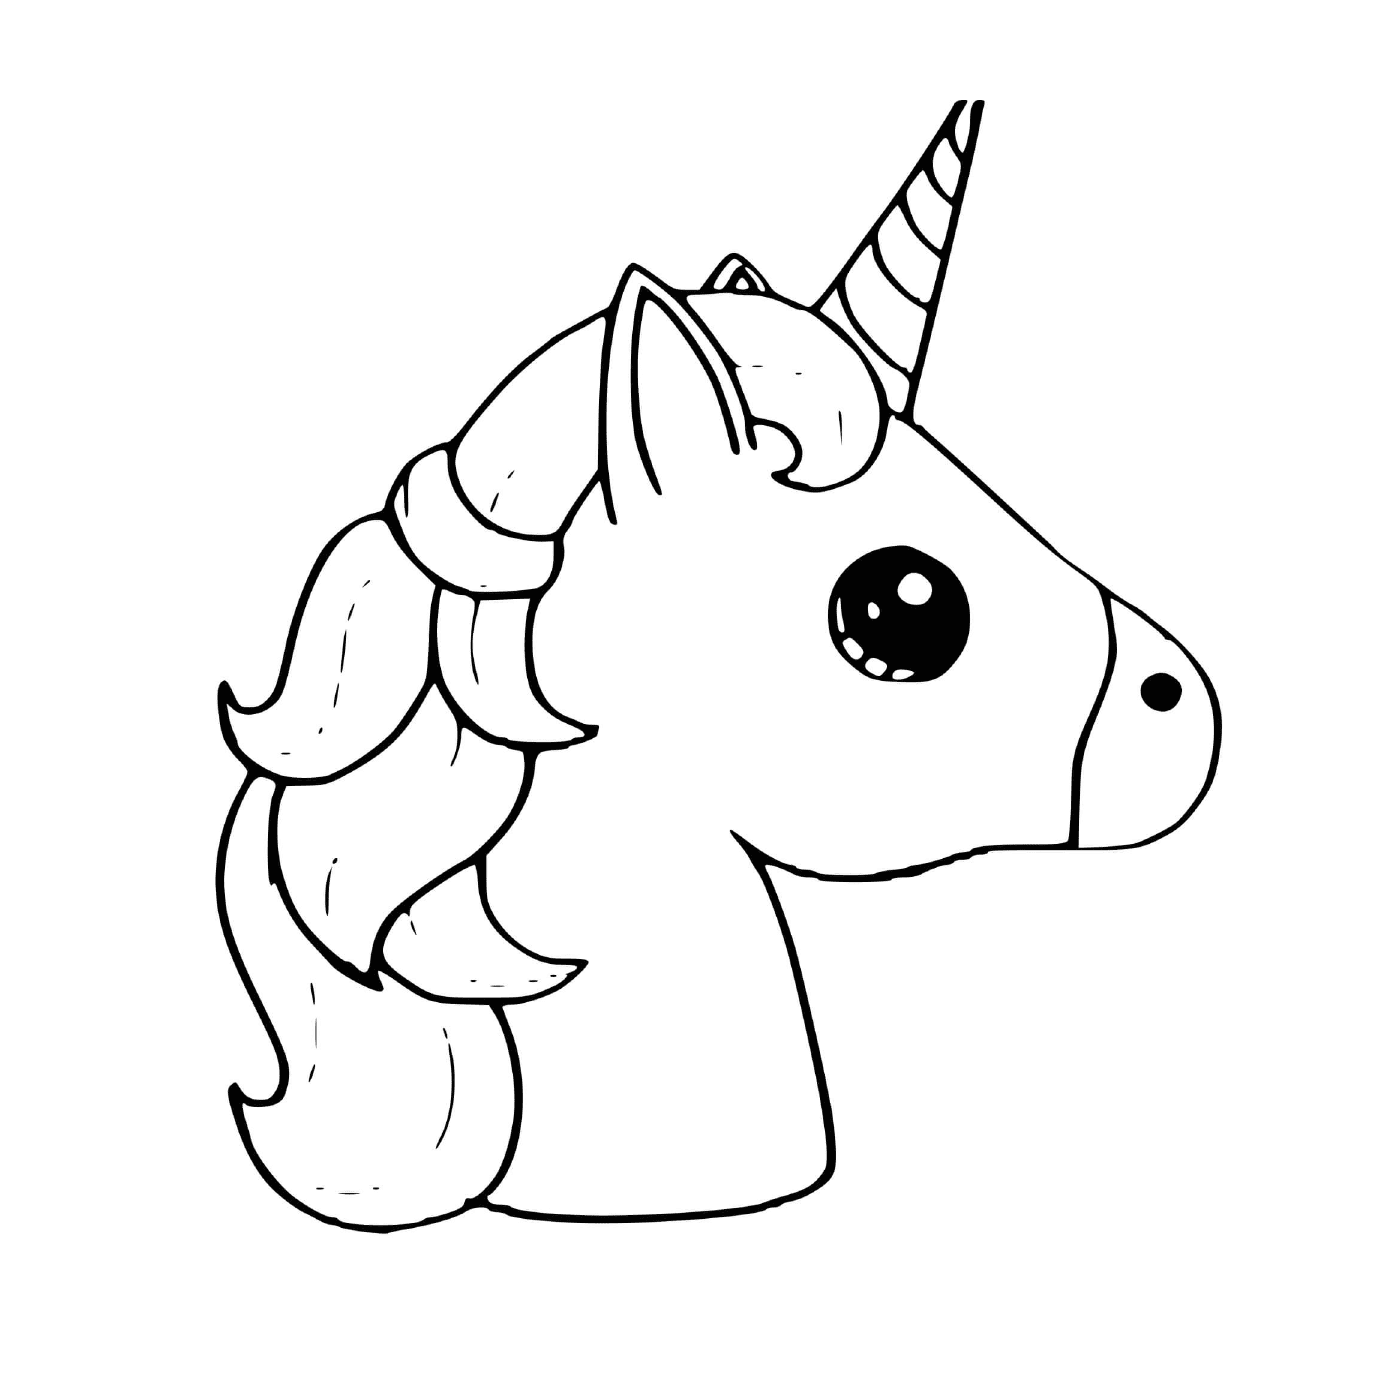  Cute kawaii unicorn 